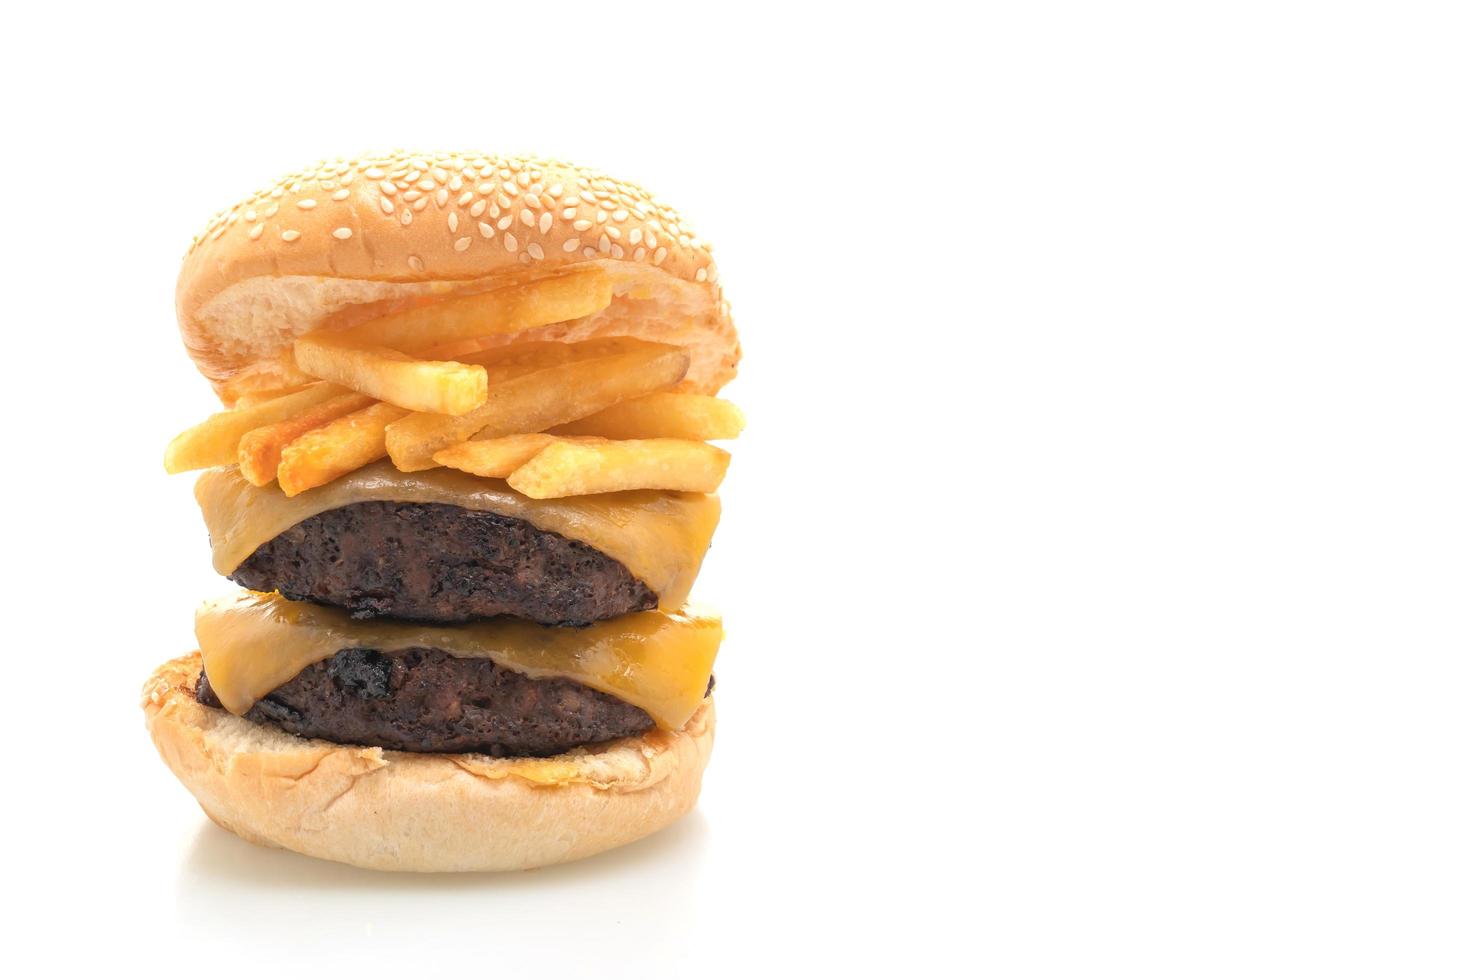 hambúrguer ou hambúrguer de carne com queijo e batatas fritas - estilo de comida não saudável foto